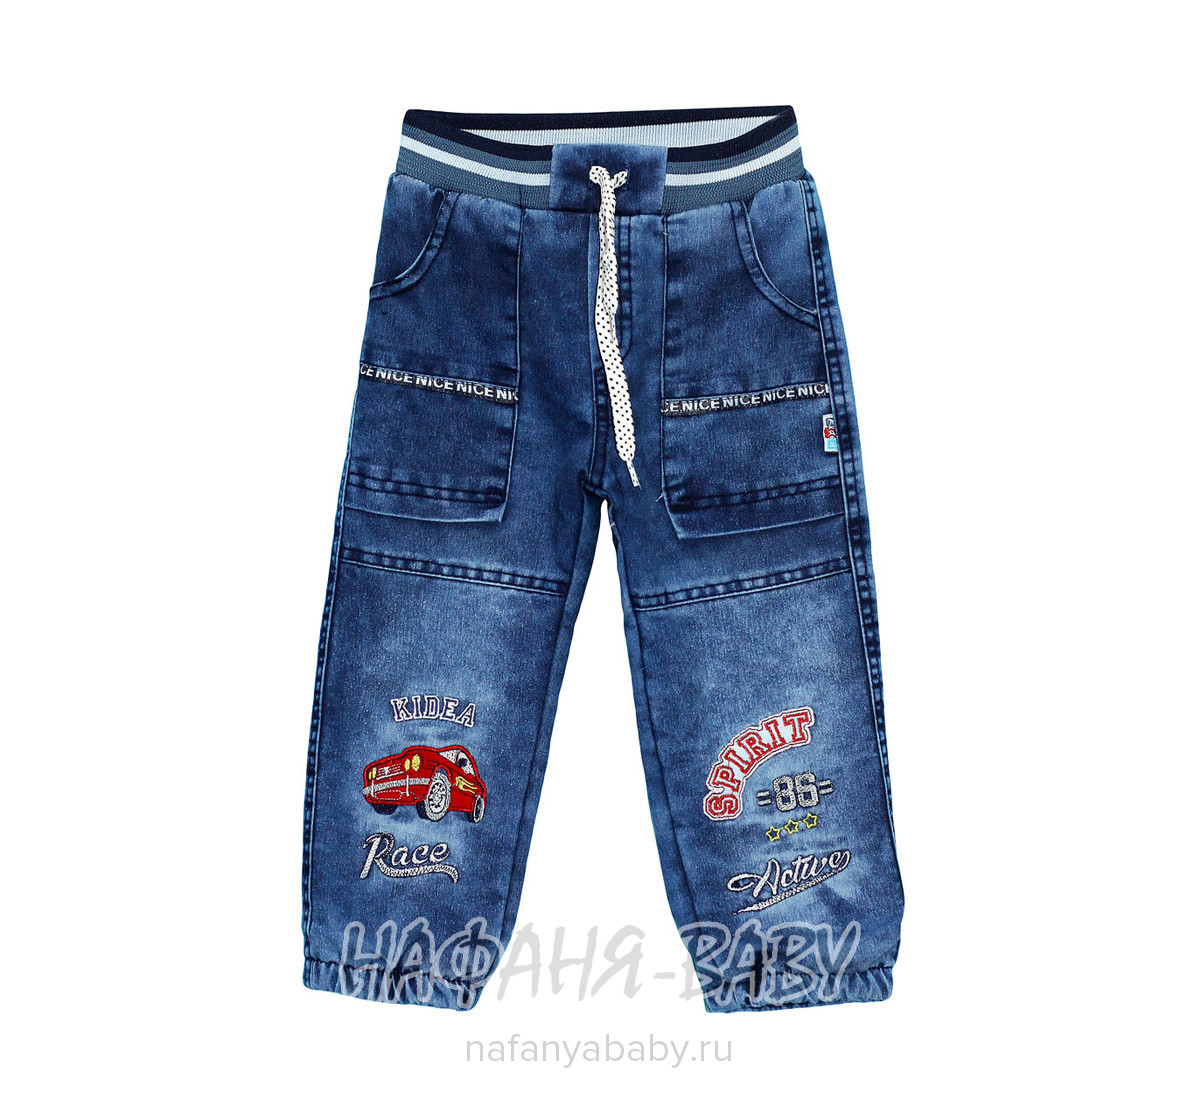 Детские утепленные джинсы Ridea арт: 19600, 1-4 года, оптом Турция